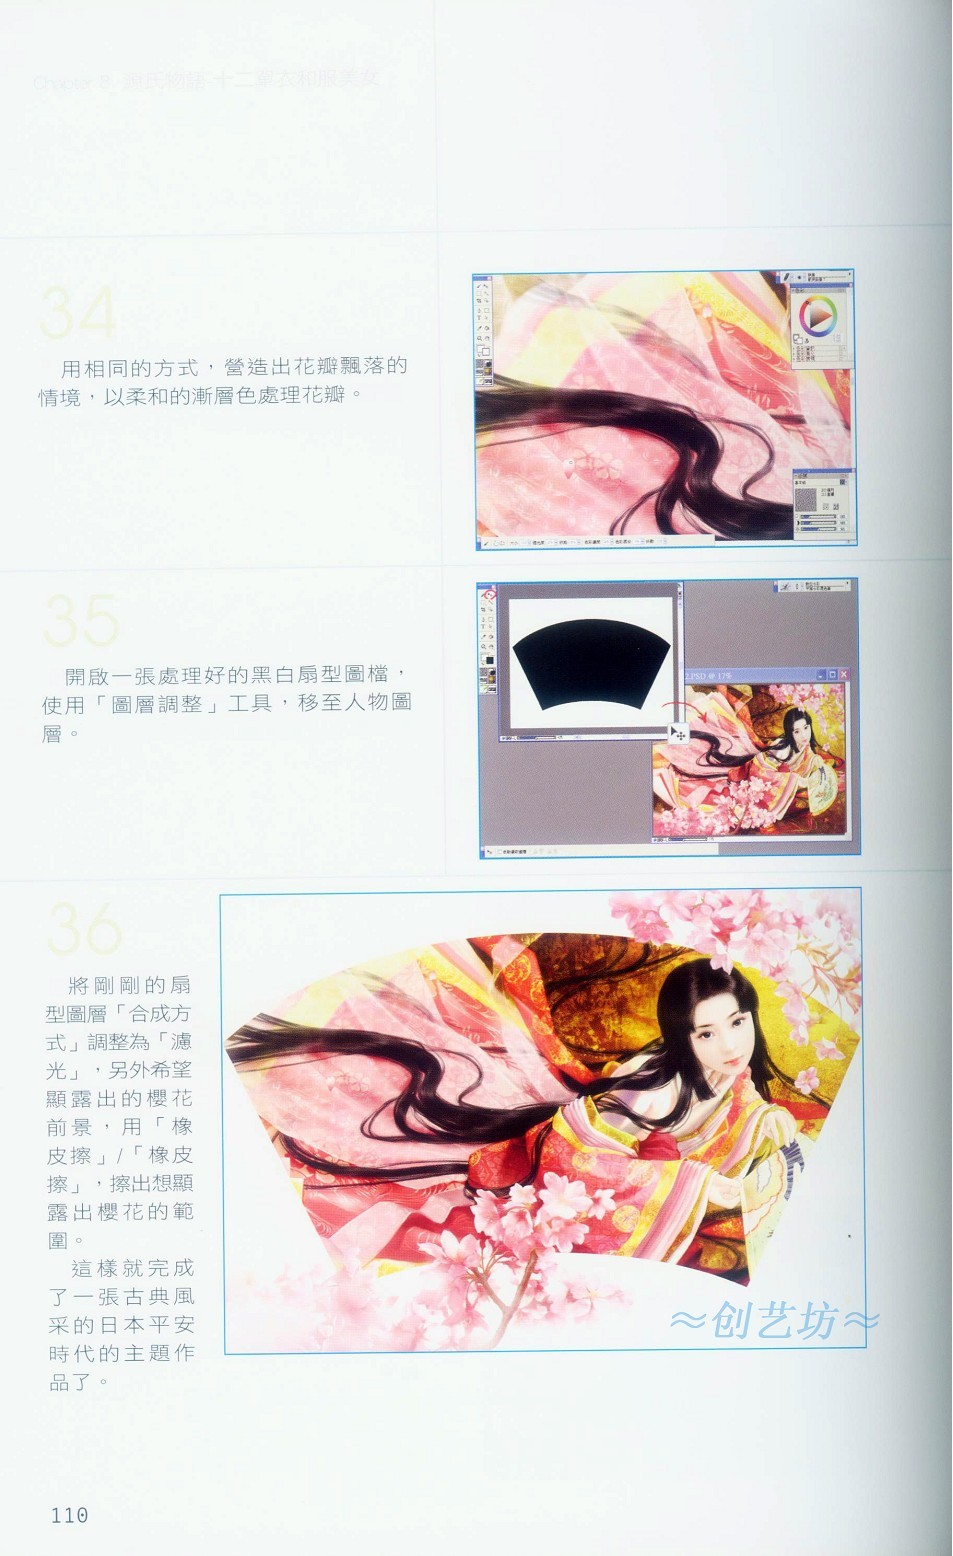 Painter绘制和服美女-插画王子技巧公开 软件云 Painter教程110.jpg